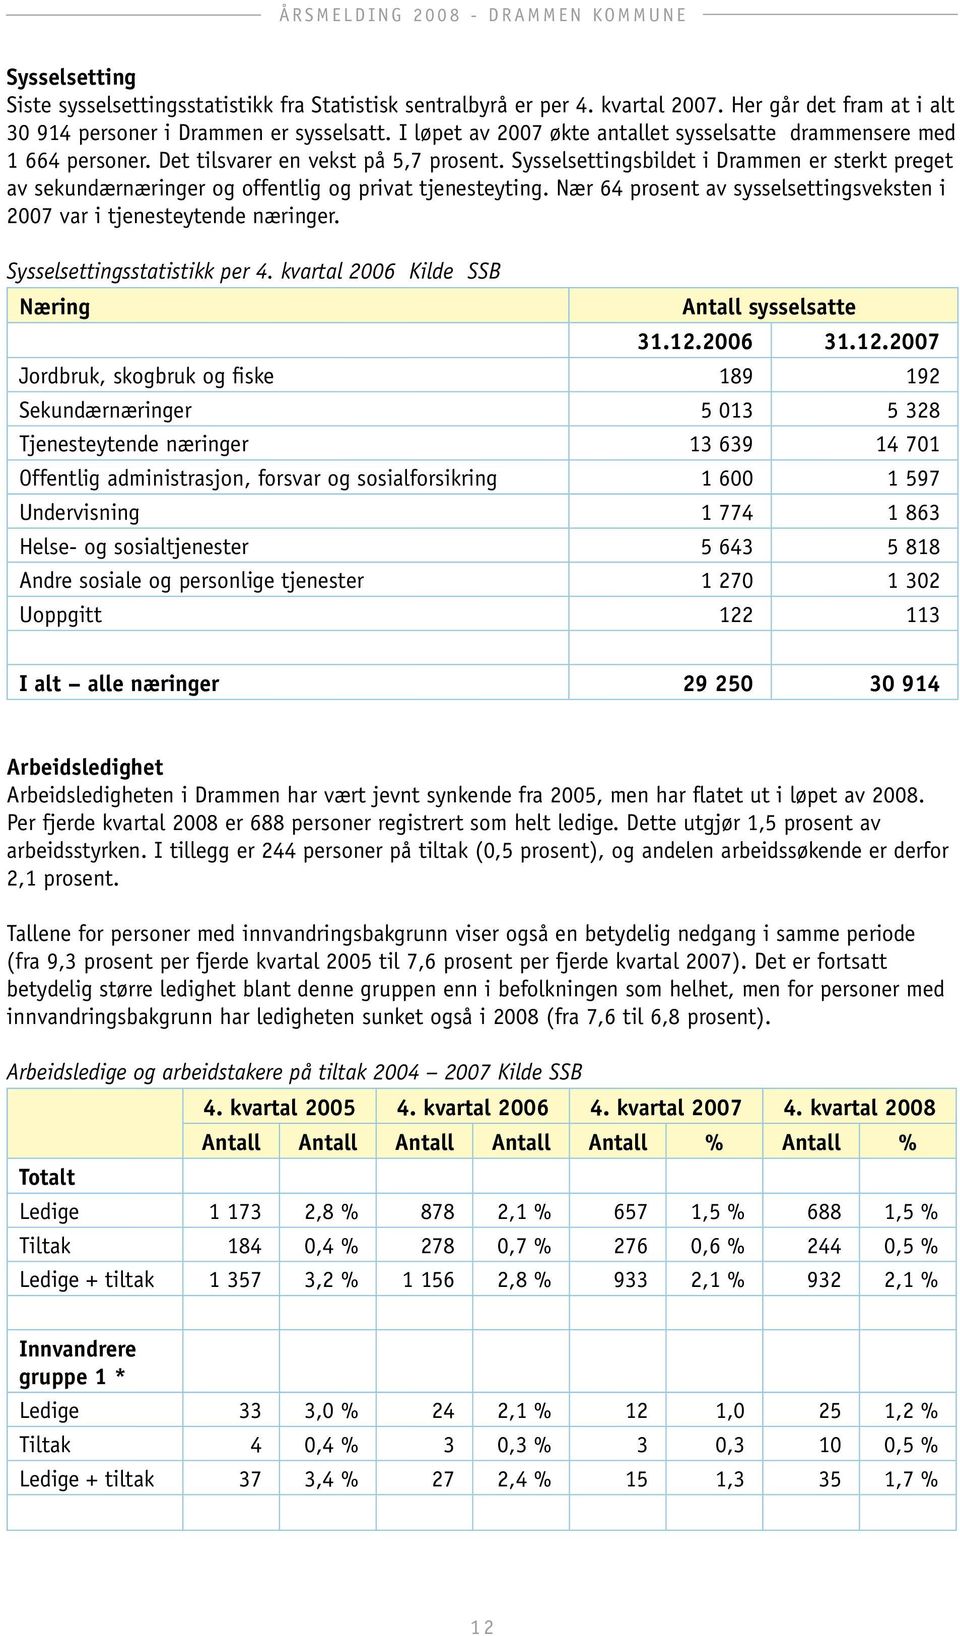 Sysselsettingsbildet i Drammen er sterkt preget av sekundærnæringer og offentlig og privat tjenesteyting. Nær 64 prosent av sysselsettingsveksten i 2007 var i tjenesteytende næringer.